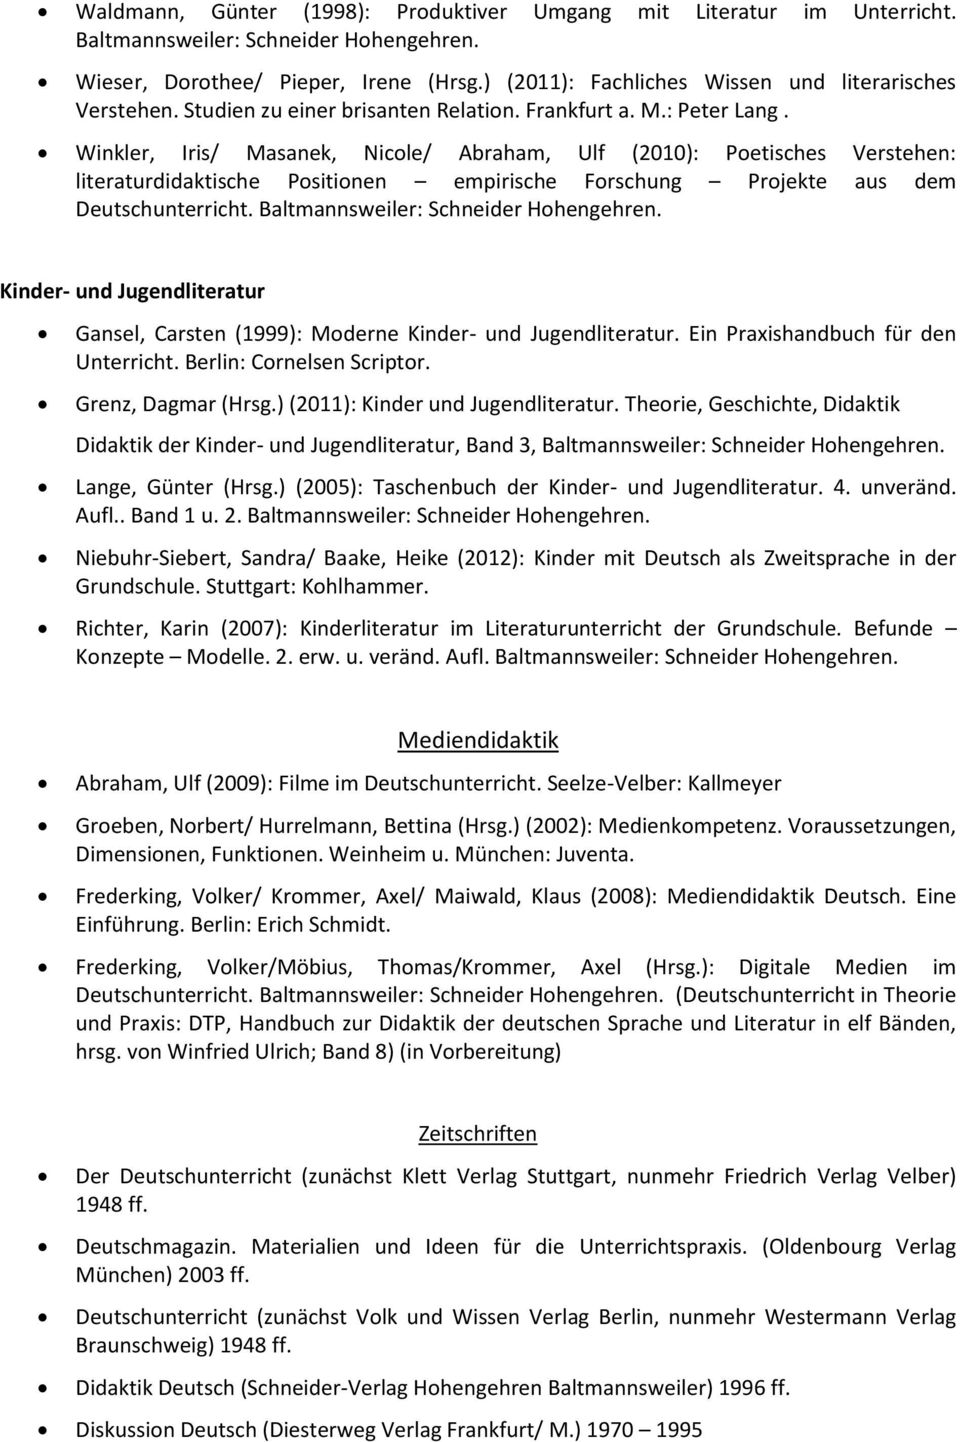 Winkler, Iris/ Masanek, Nicole/ Abraham, Ulf (2010): Poetisches Verstehen: literaturdidaktische Positionen empirische Forschung Projekte aus dem Deutschunterricht.